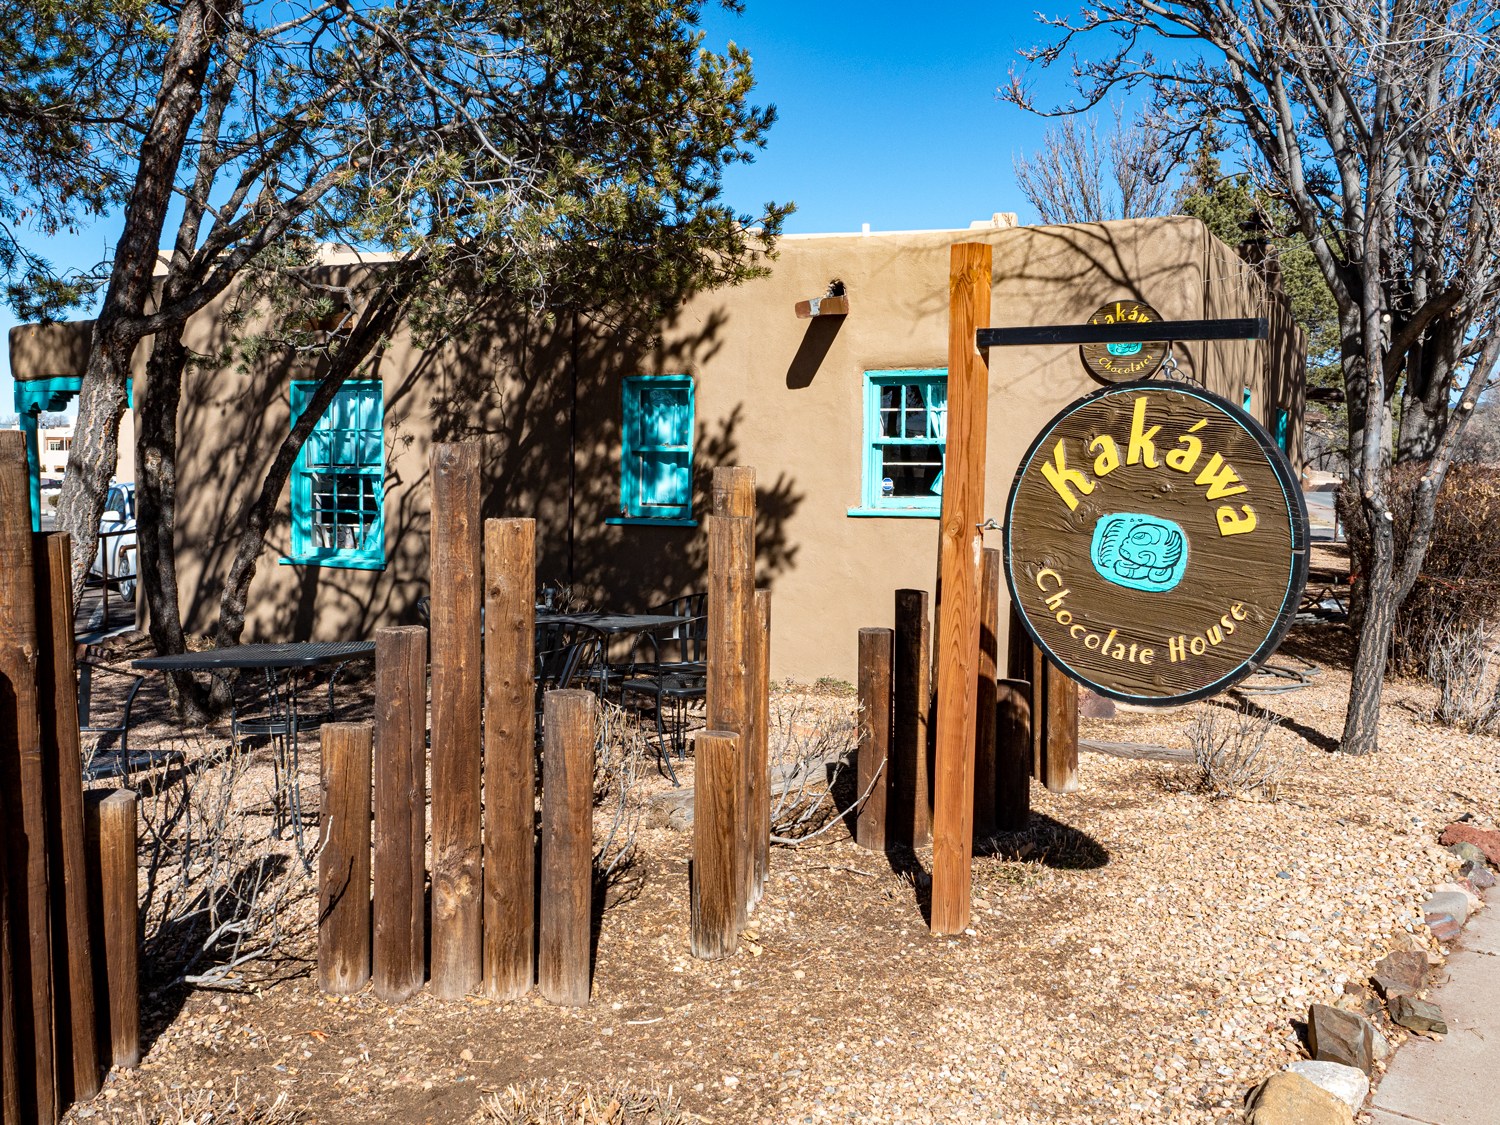 Exterior of Kakawa Chocolate House in Santa Fe New Mexico